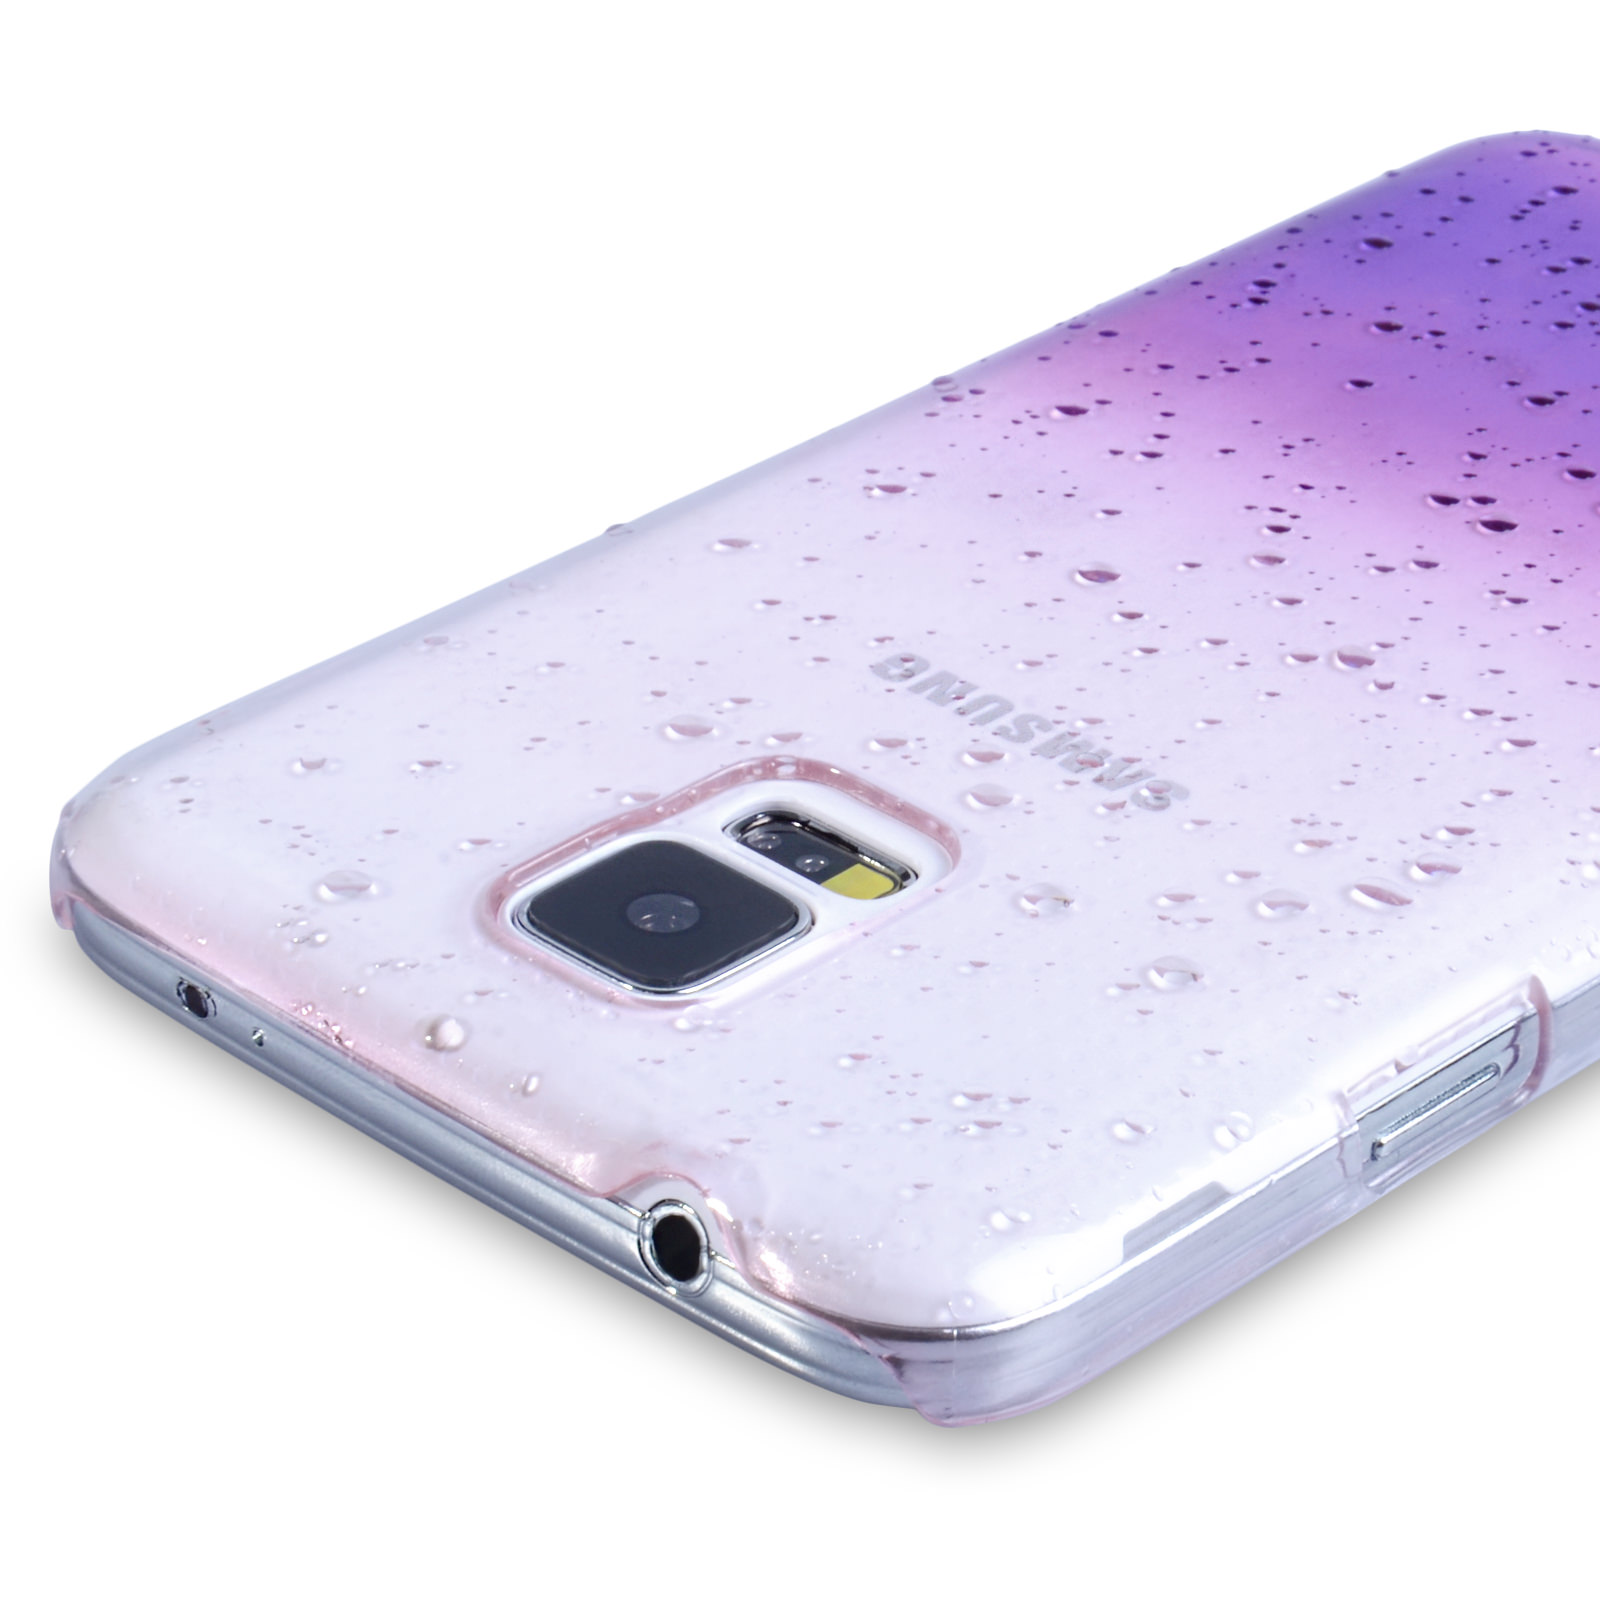 YouSave Samsung Galaxy S5 Raindrop Hard Case - Purple-Clear